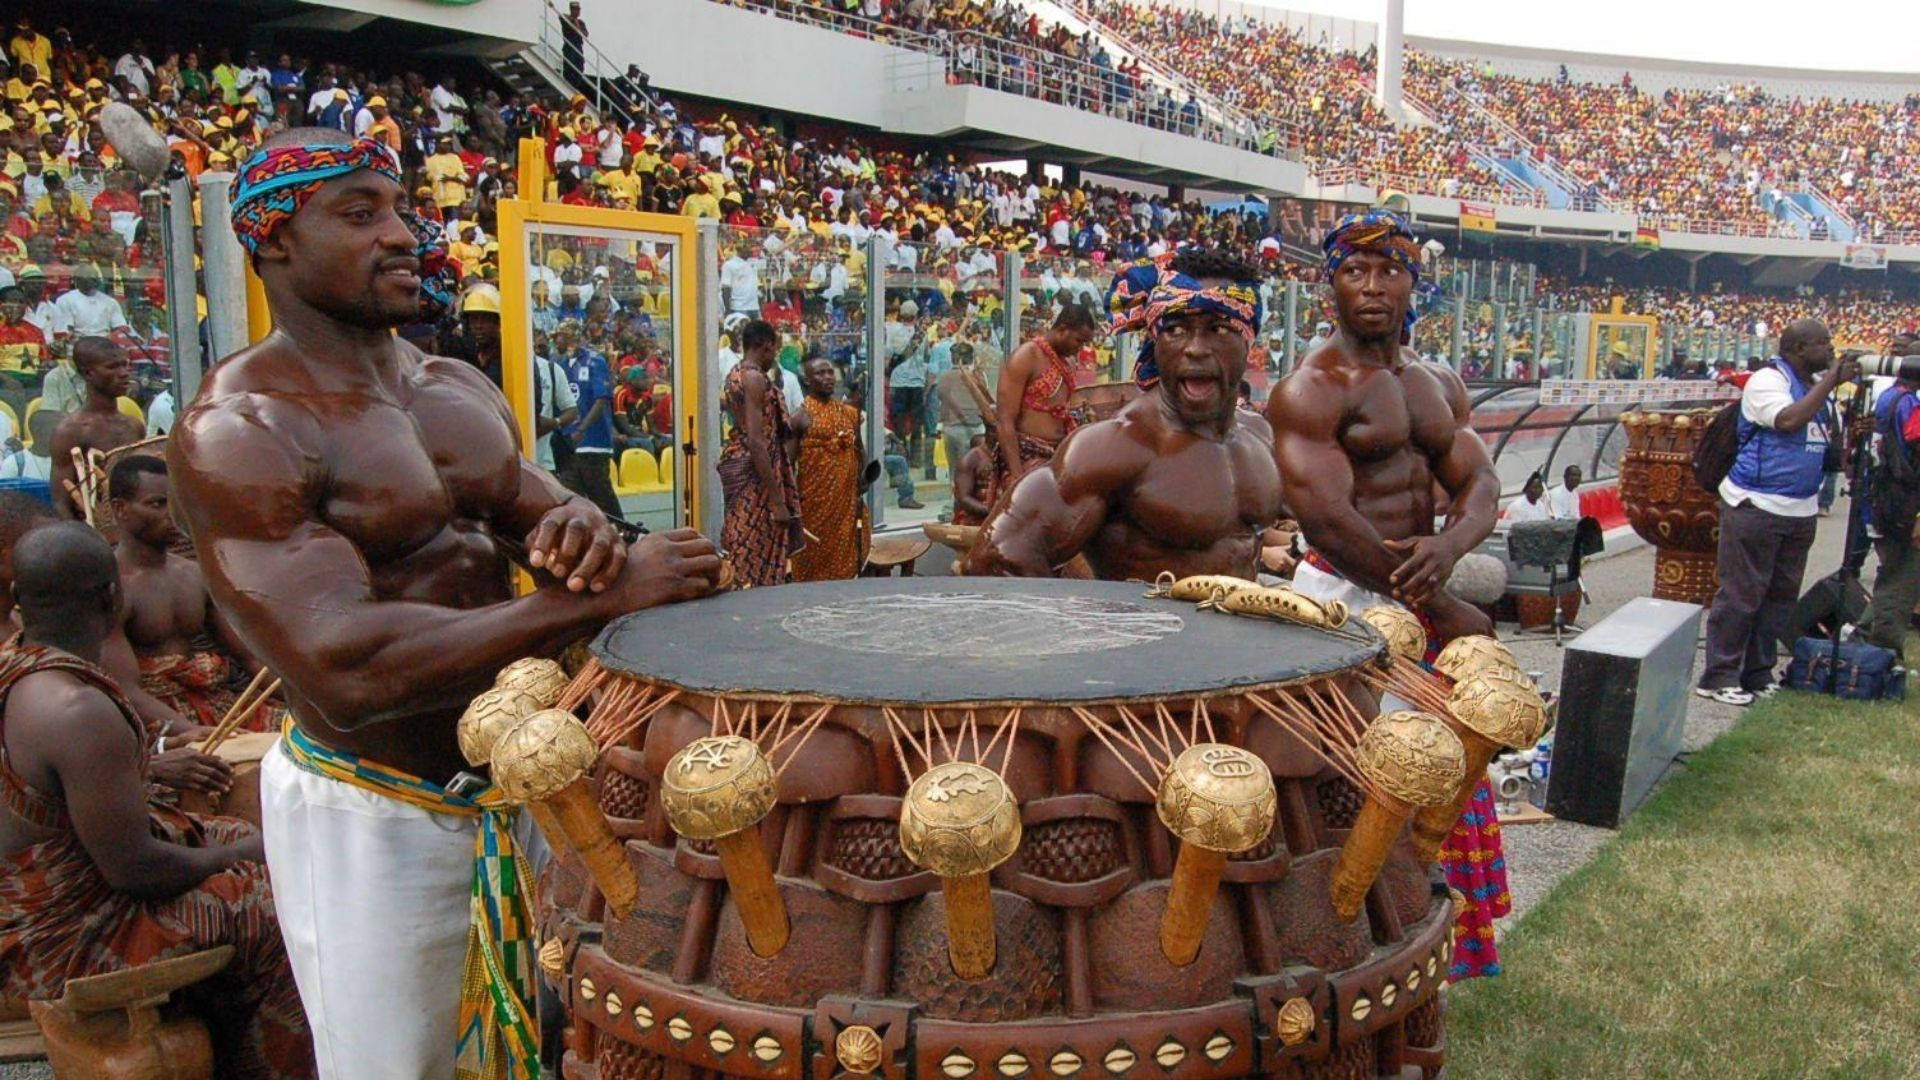 Tag en tur til Ghana og oplev kulturelle præstationer! Wallpaper